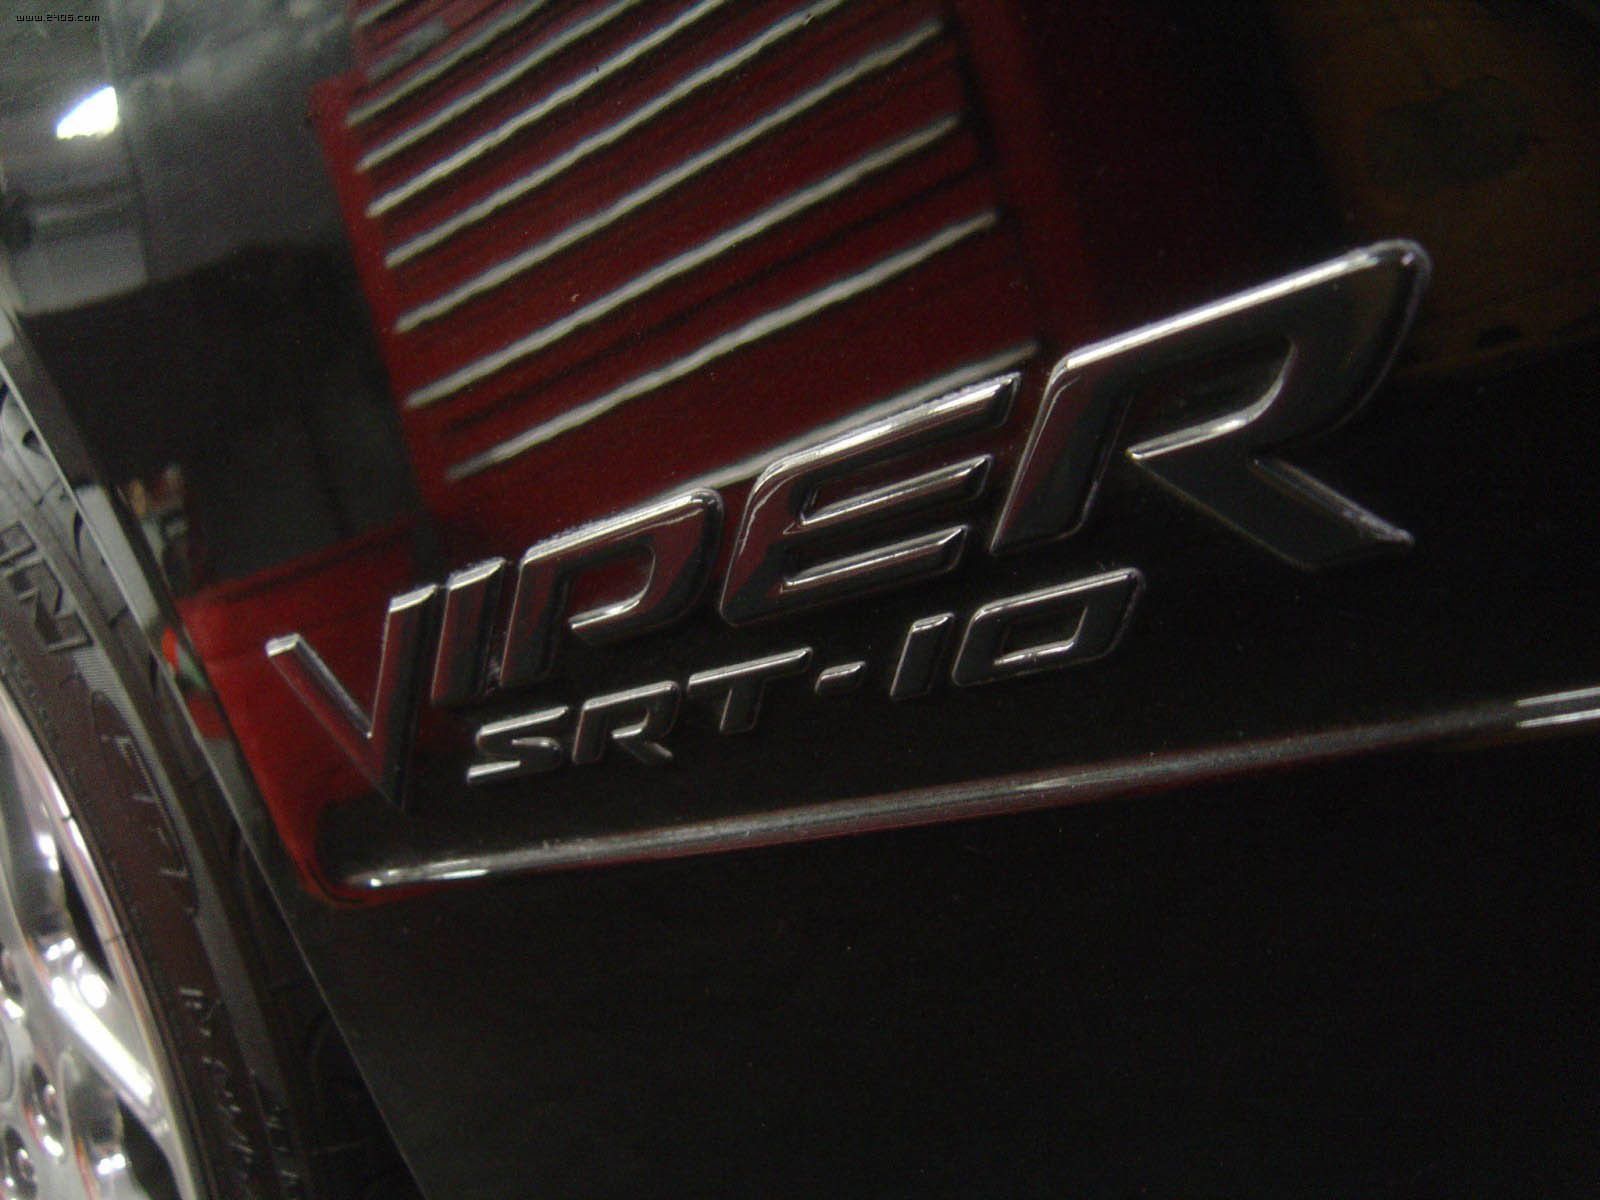 2003 Dodge Viper SRT10